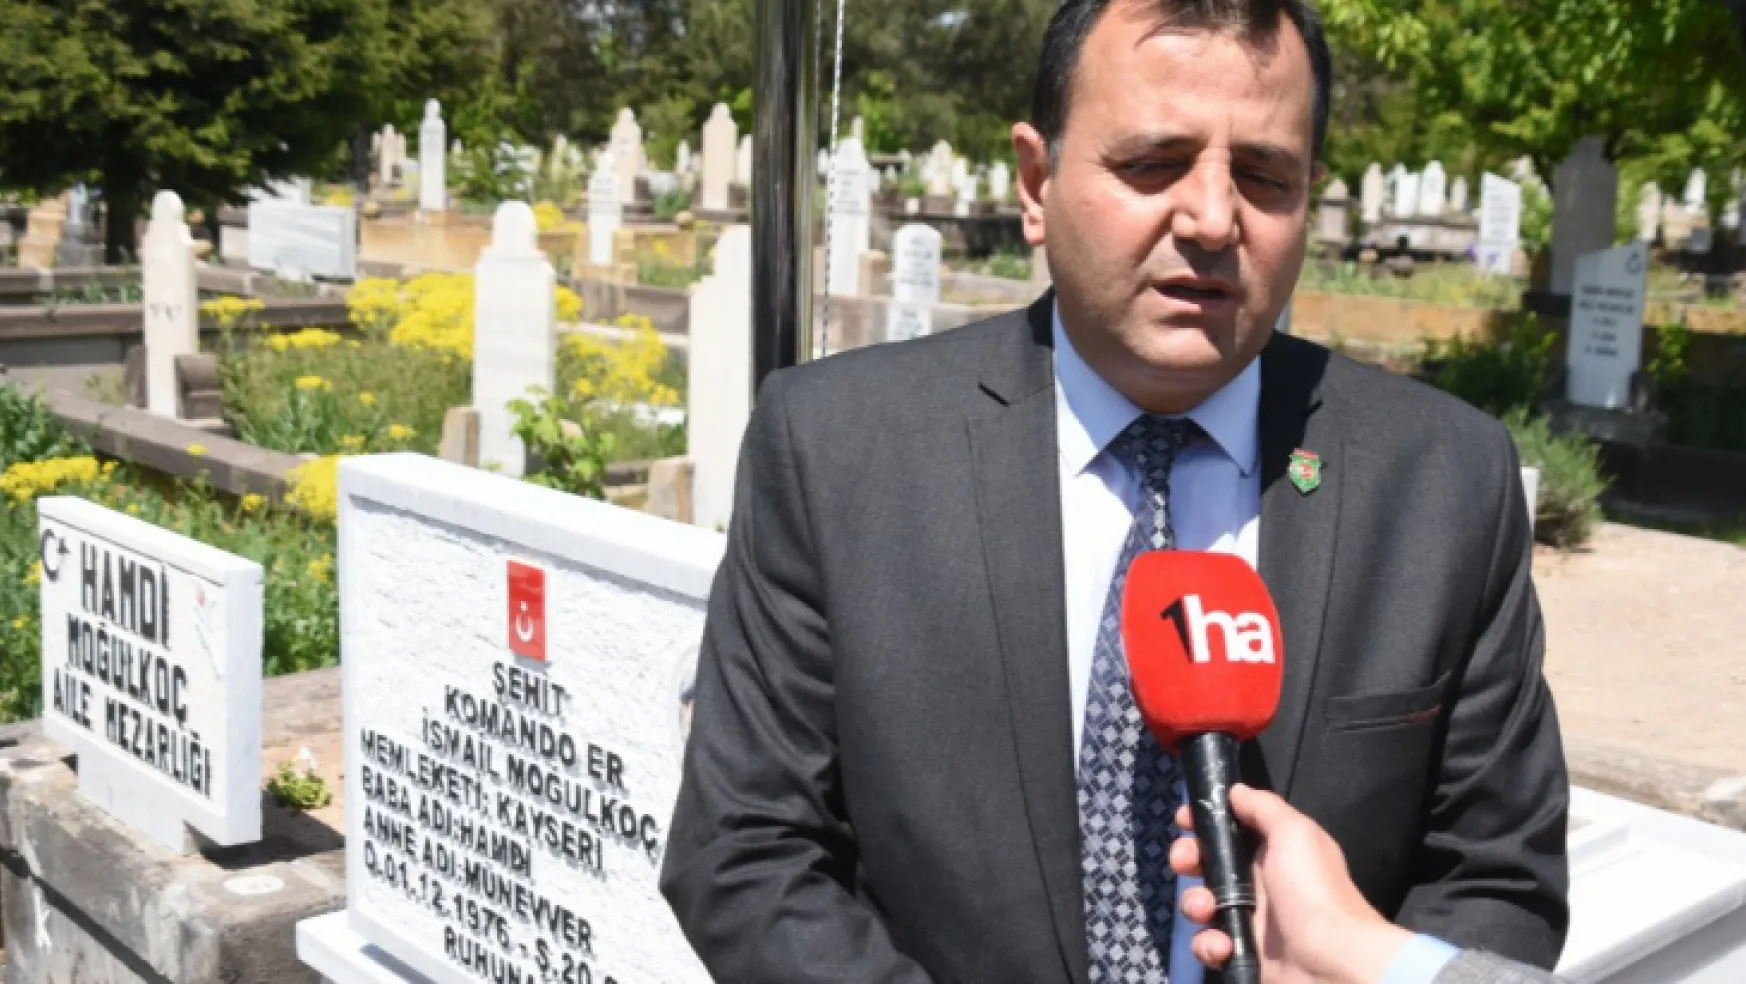 Şehit Komando Er İsmail Moğulkoç mezar başında anıldı